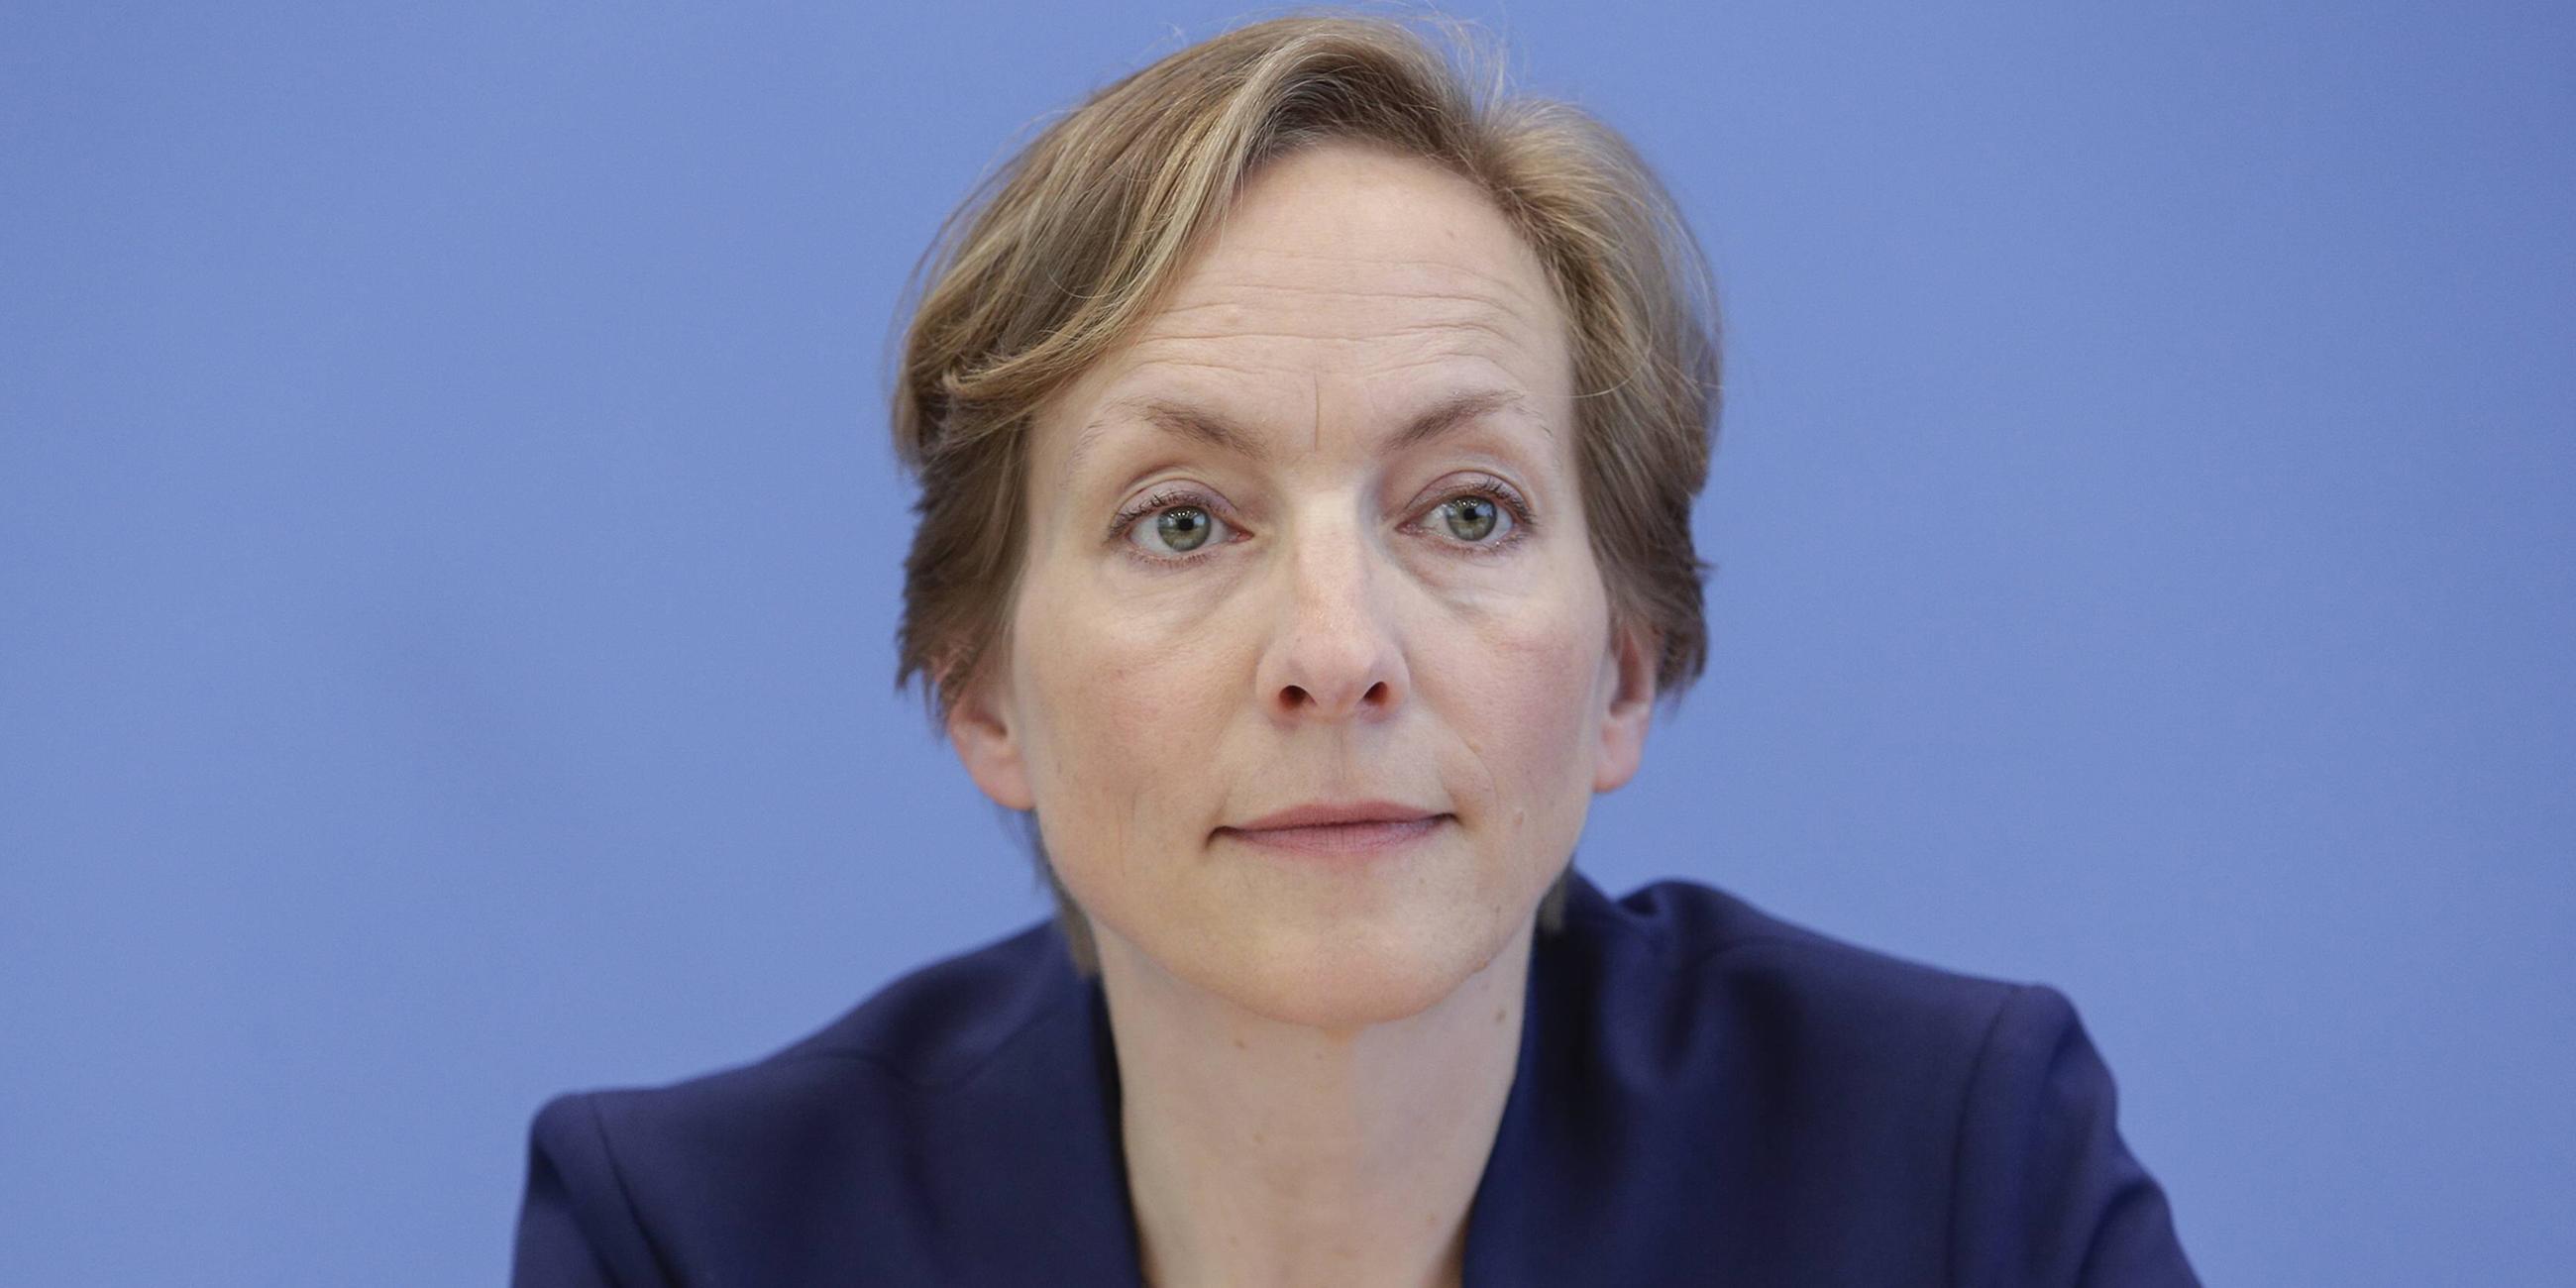 Archiv: Prof. Dr. Ursula Schroeder, Institut fuer Friedensforschung und Sicherheitspolitik an der Universitaet Hamburg, IFSH.